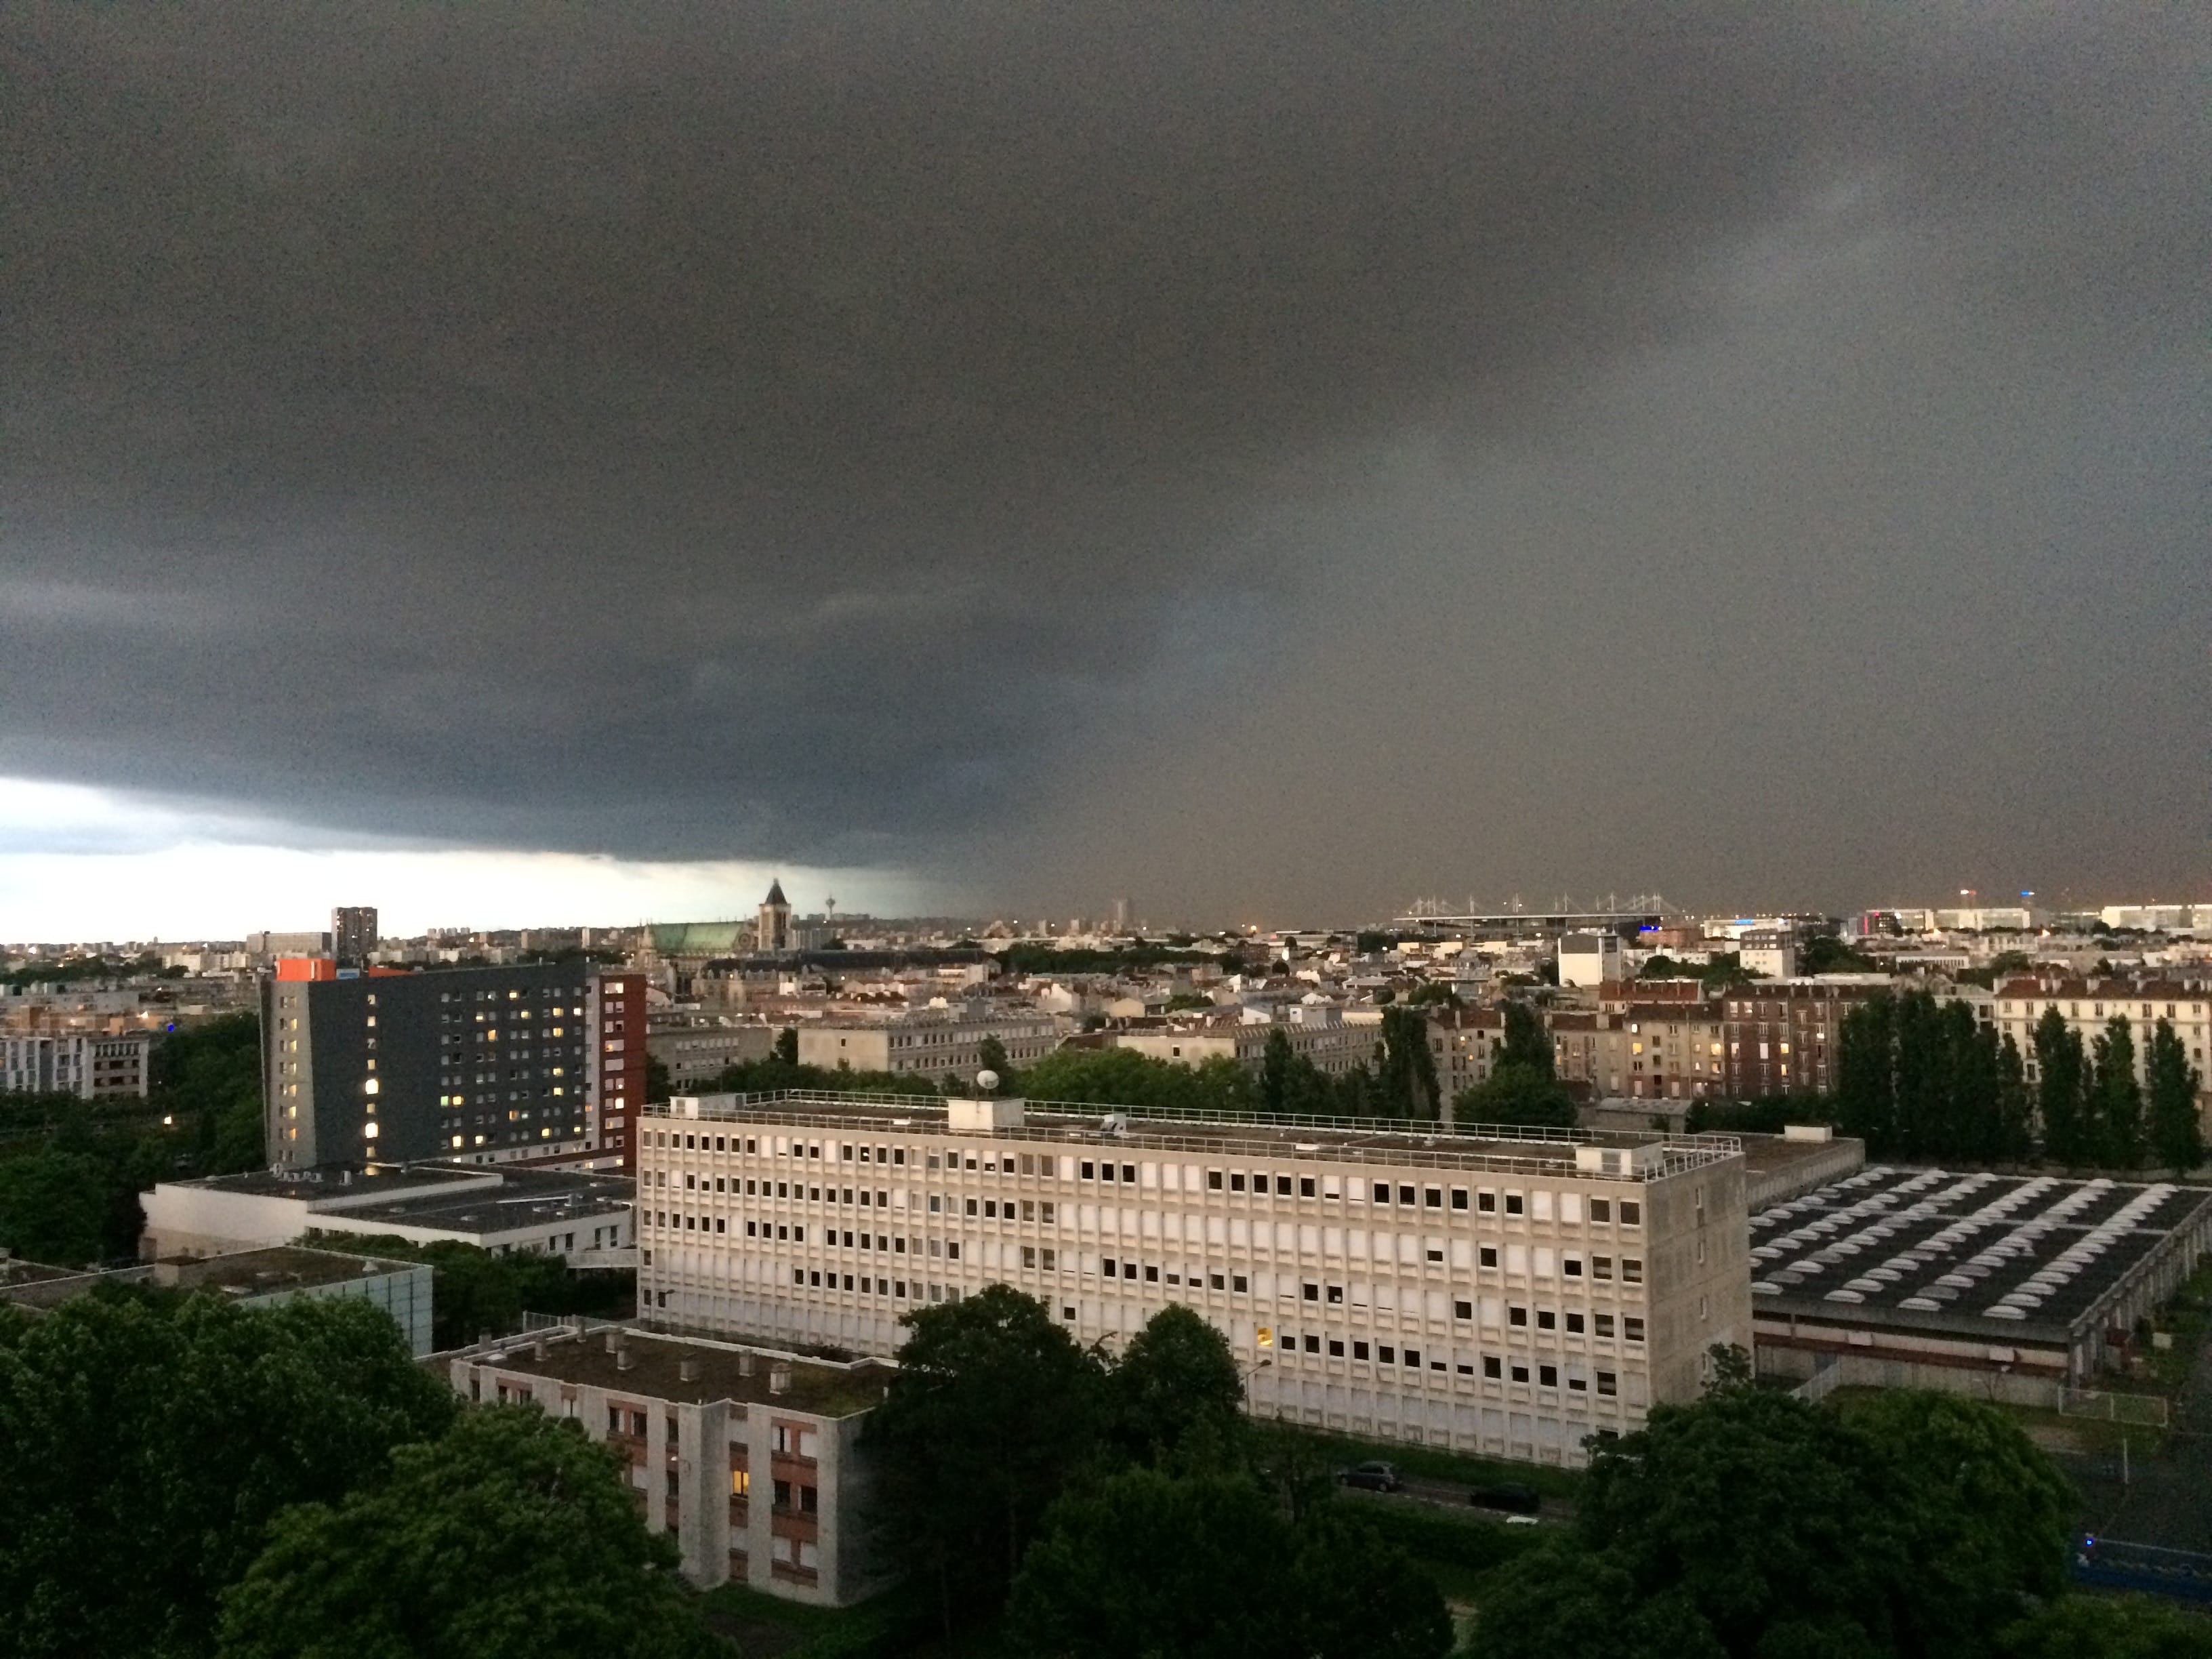 Capture d’ecran du précédant épisode orageux sur Paris, vu depuis mon balcon situé au 12ème étage à saint Denis (vu sur Paris) - 30/05/2018 21:00 - Djamel Taklit